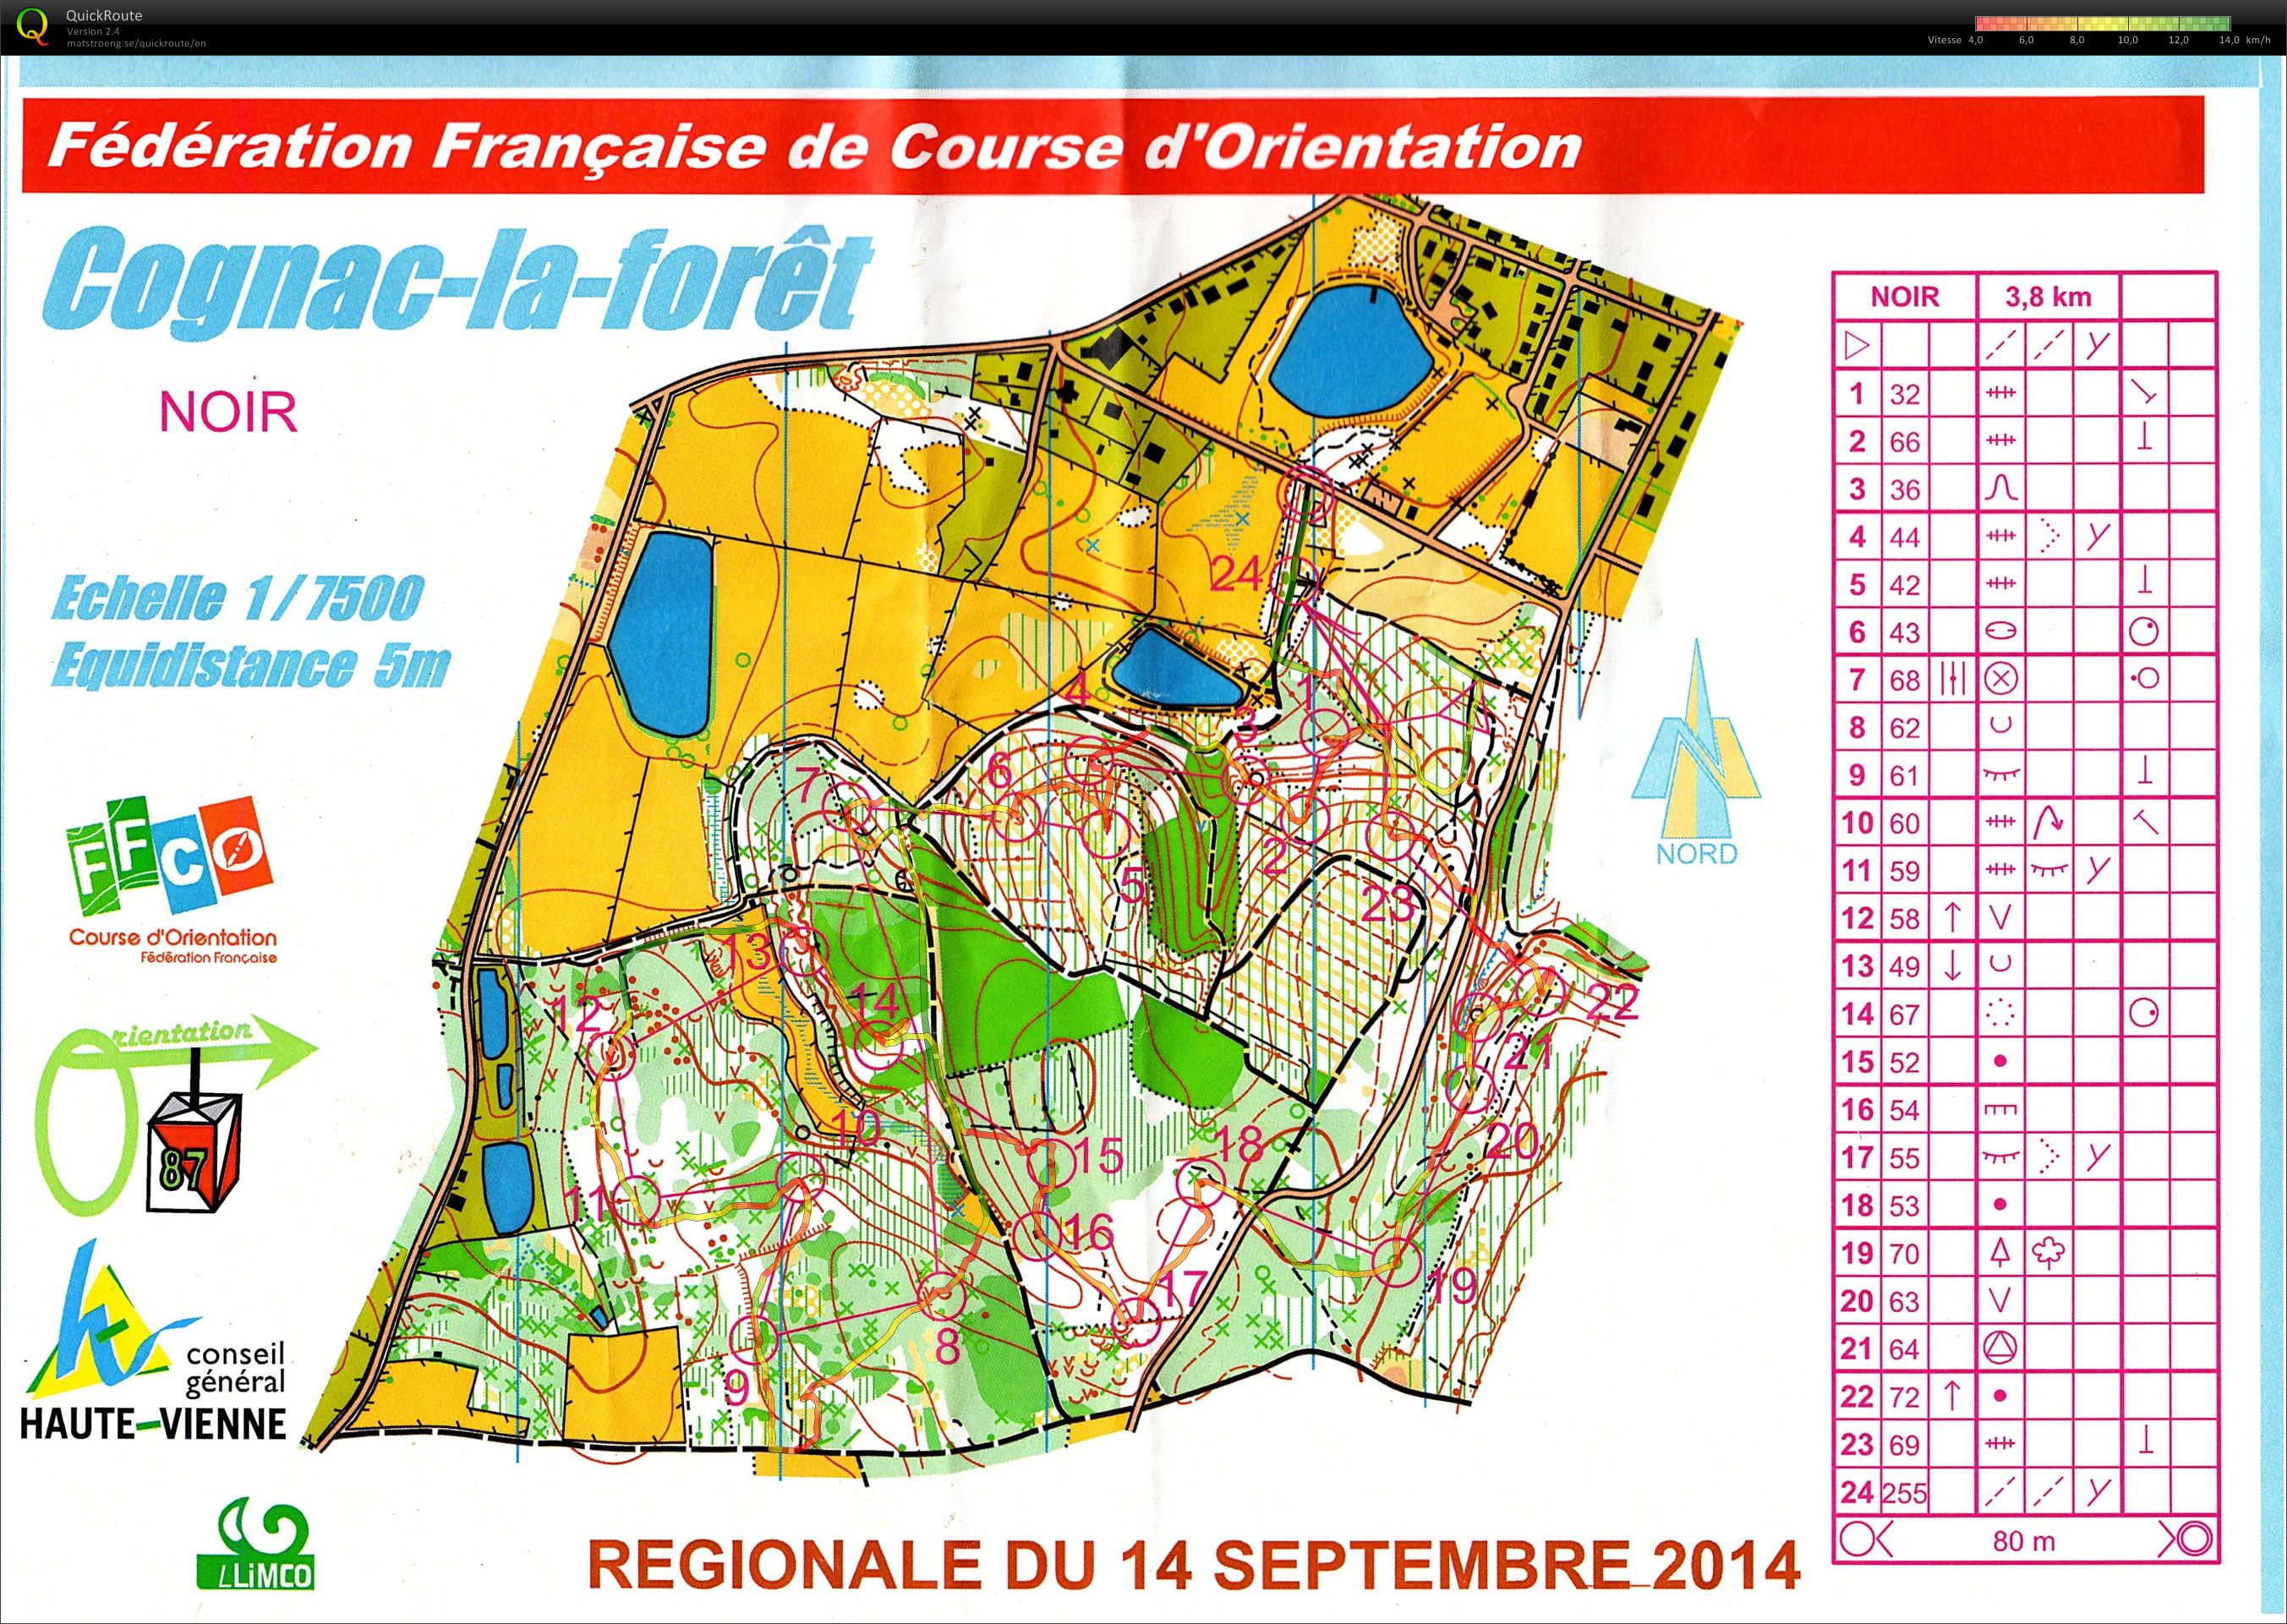 Régionale Limousin MD (14/09/2014)